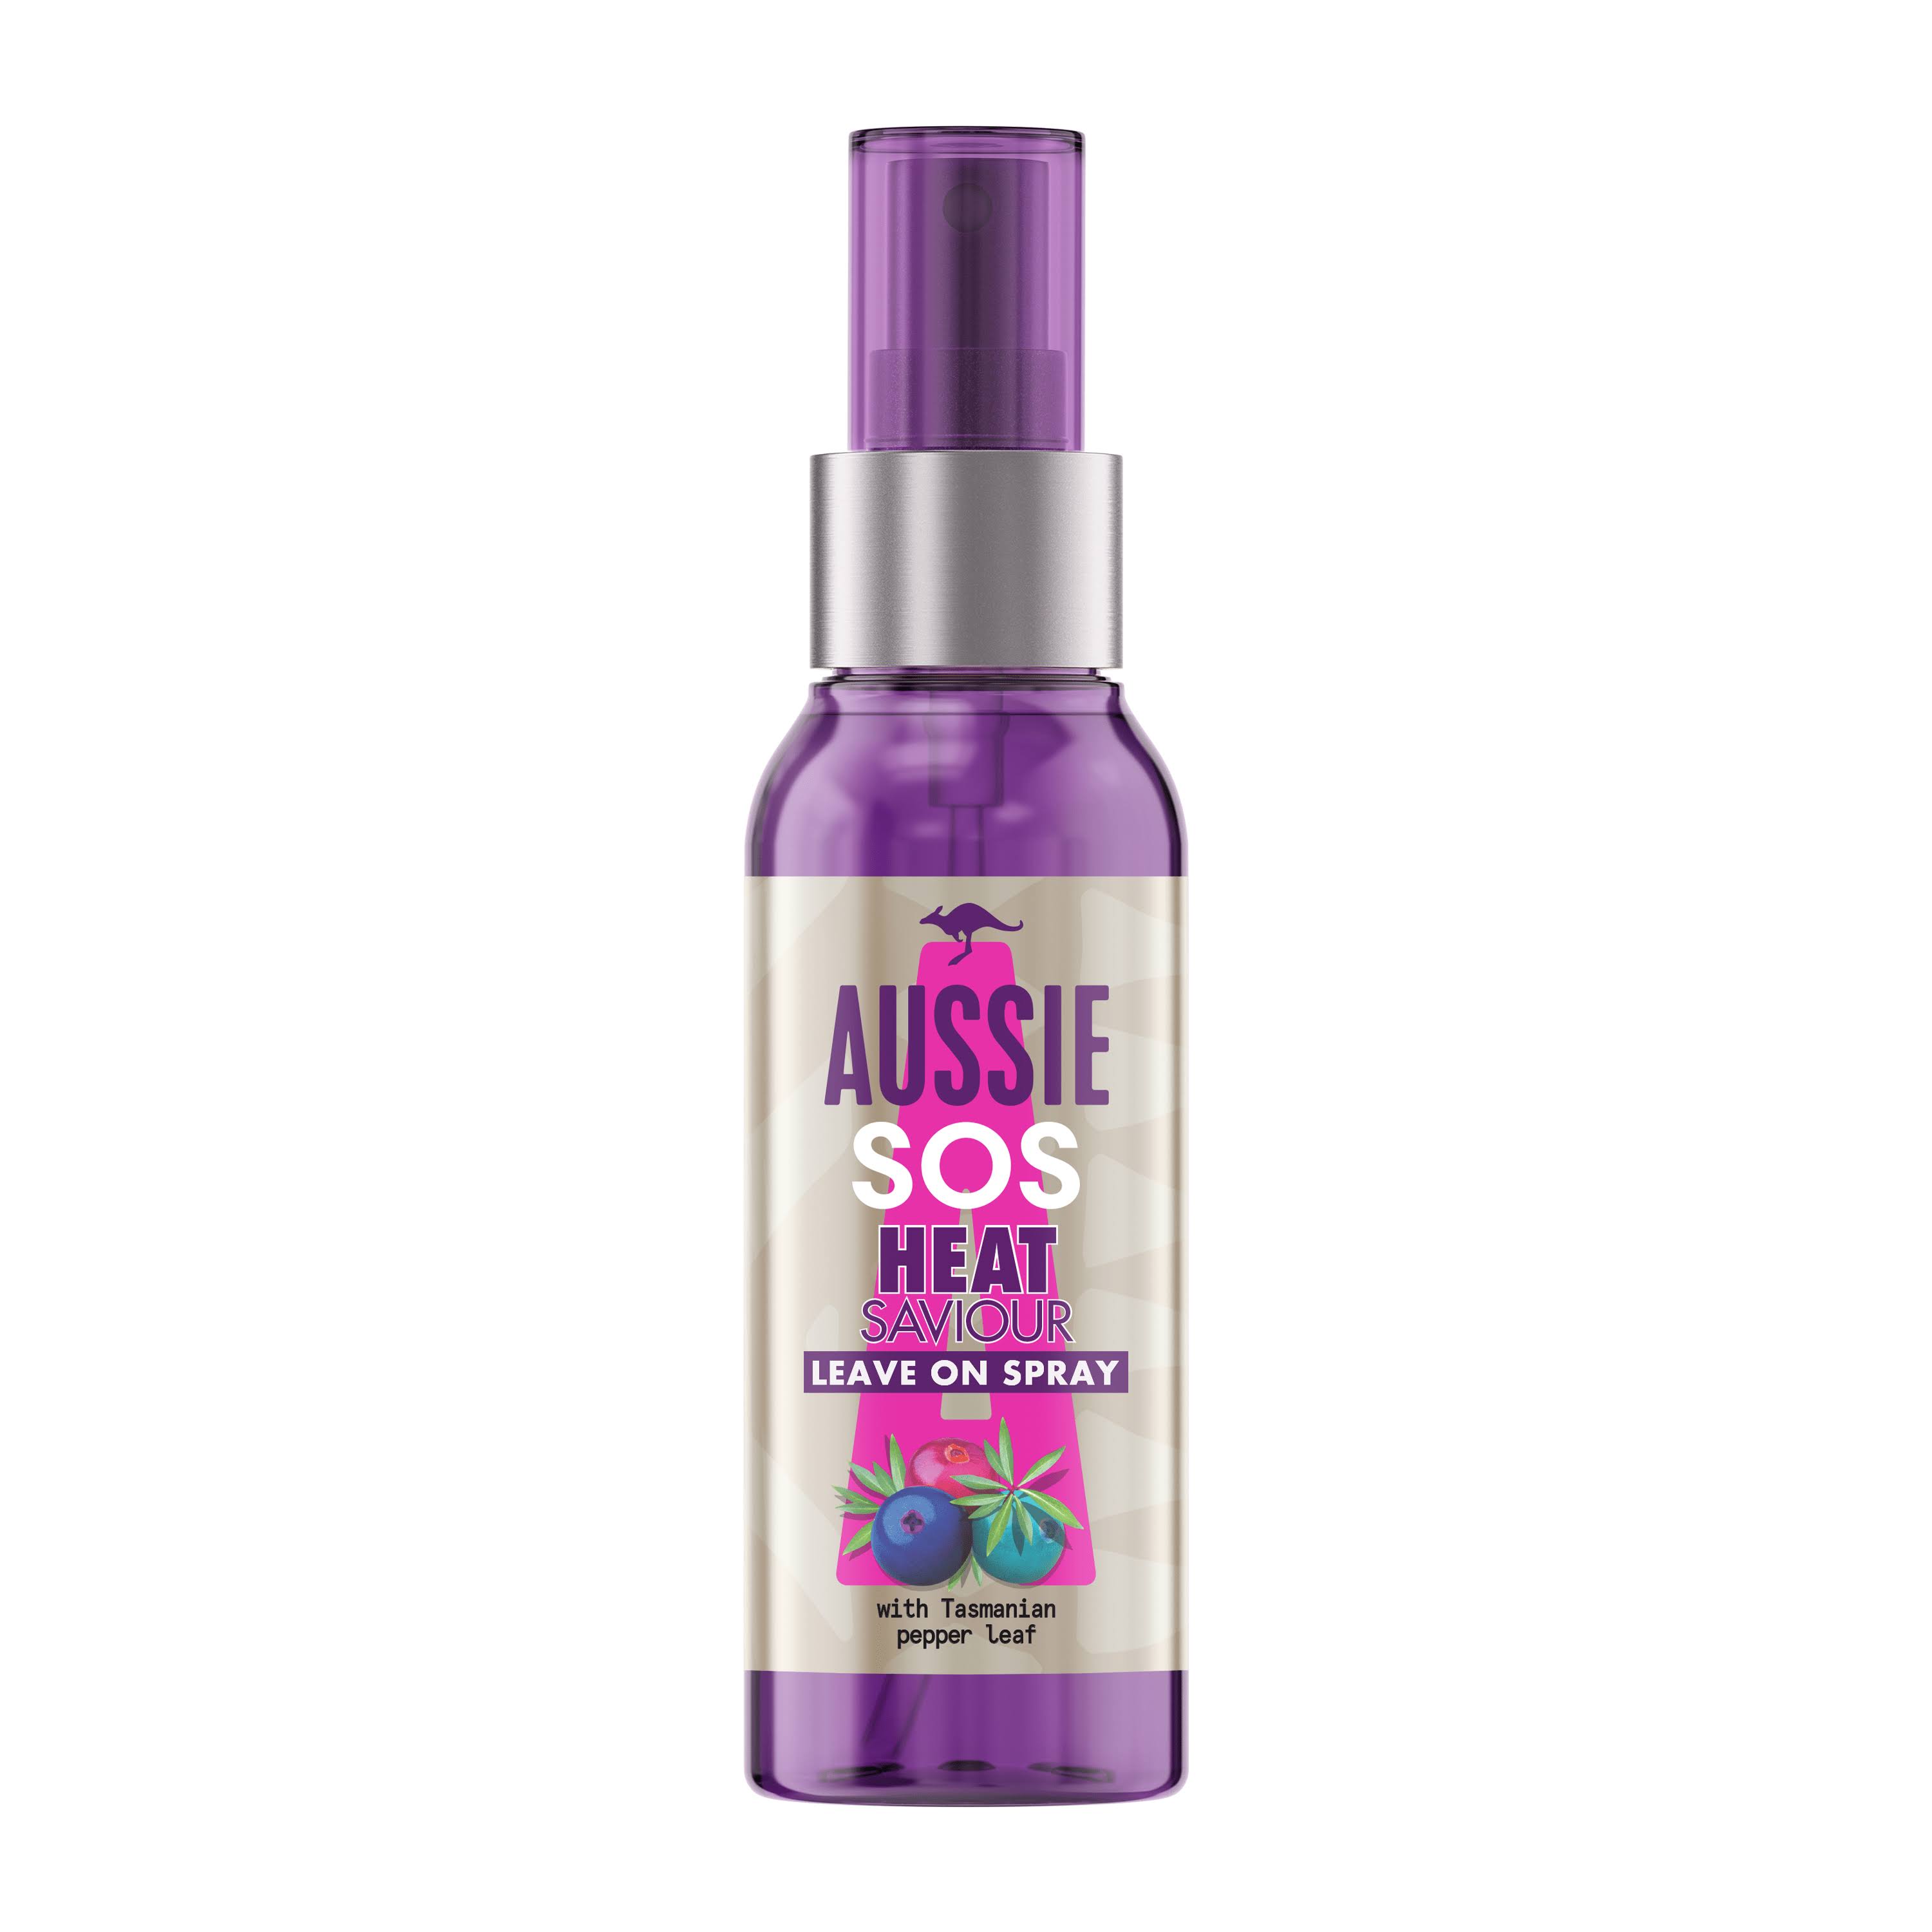 Aussie SOS Instant Heat Saviour Hair Spray, 100ml